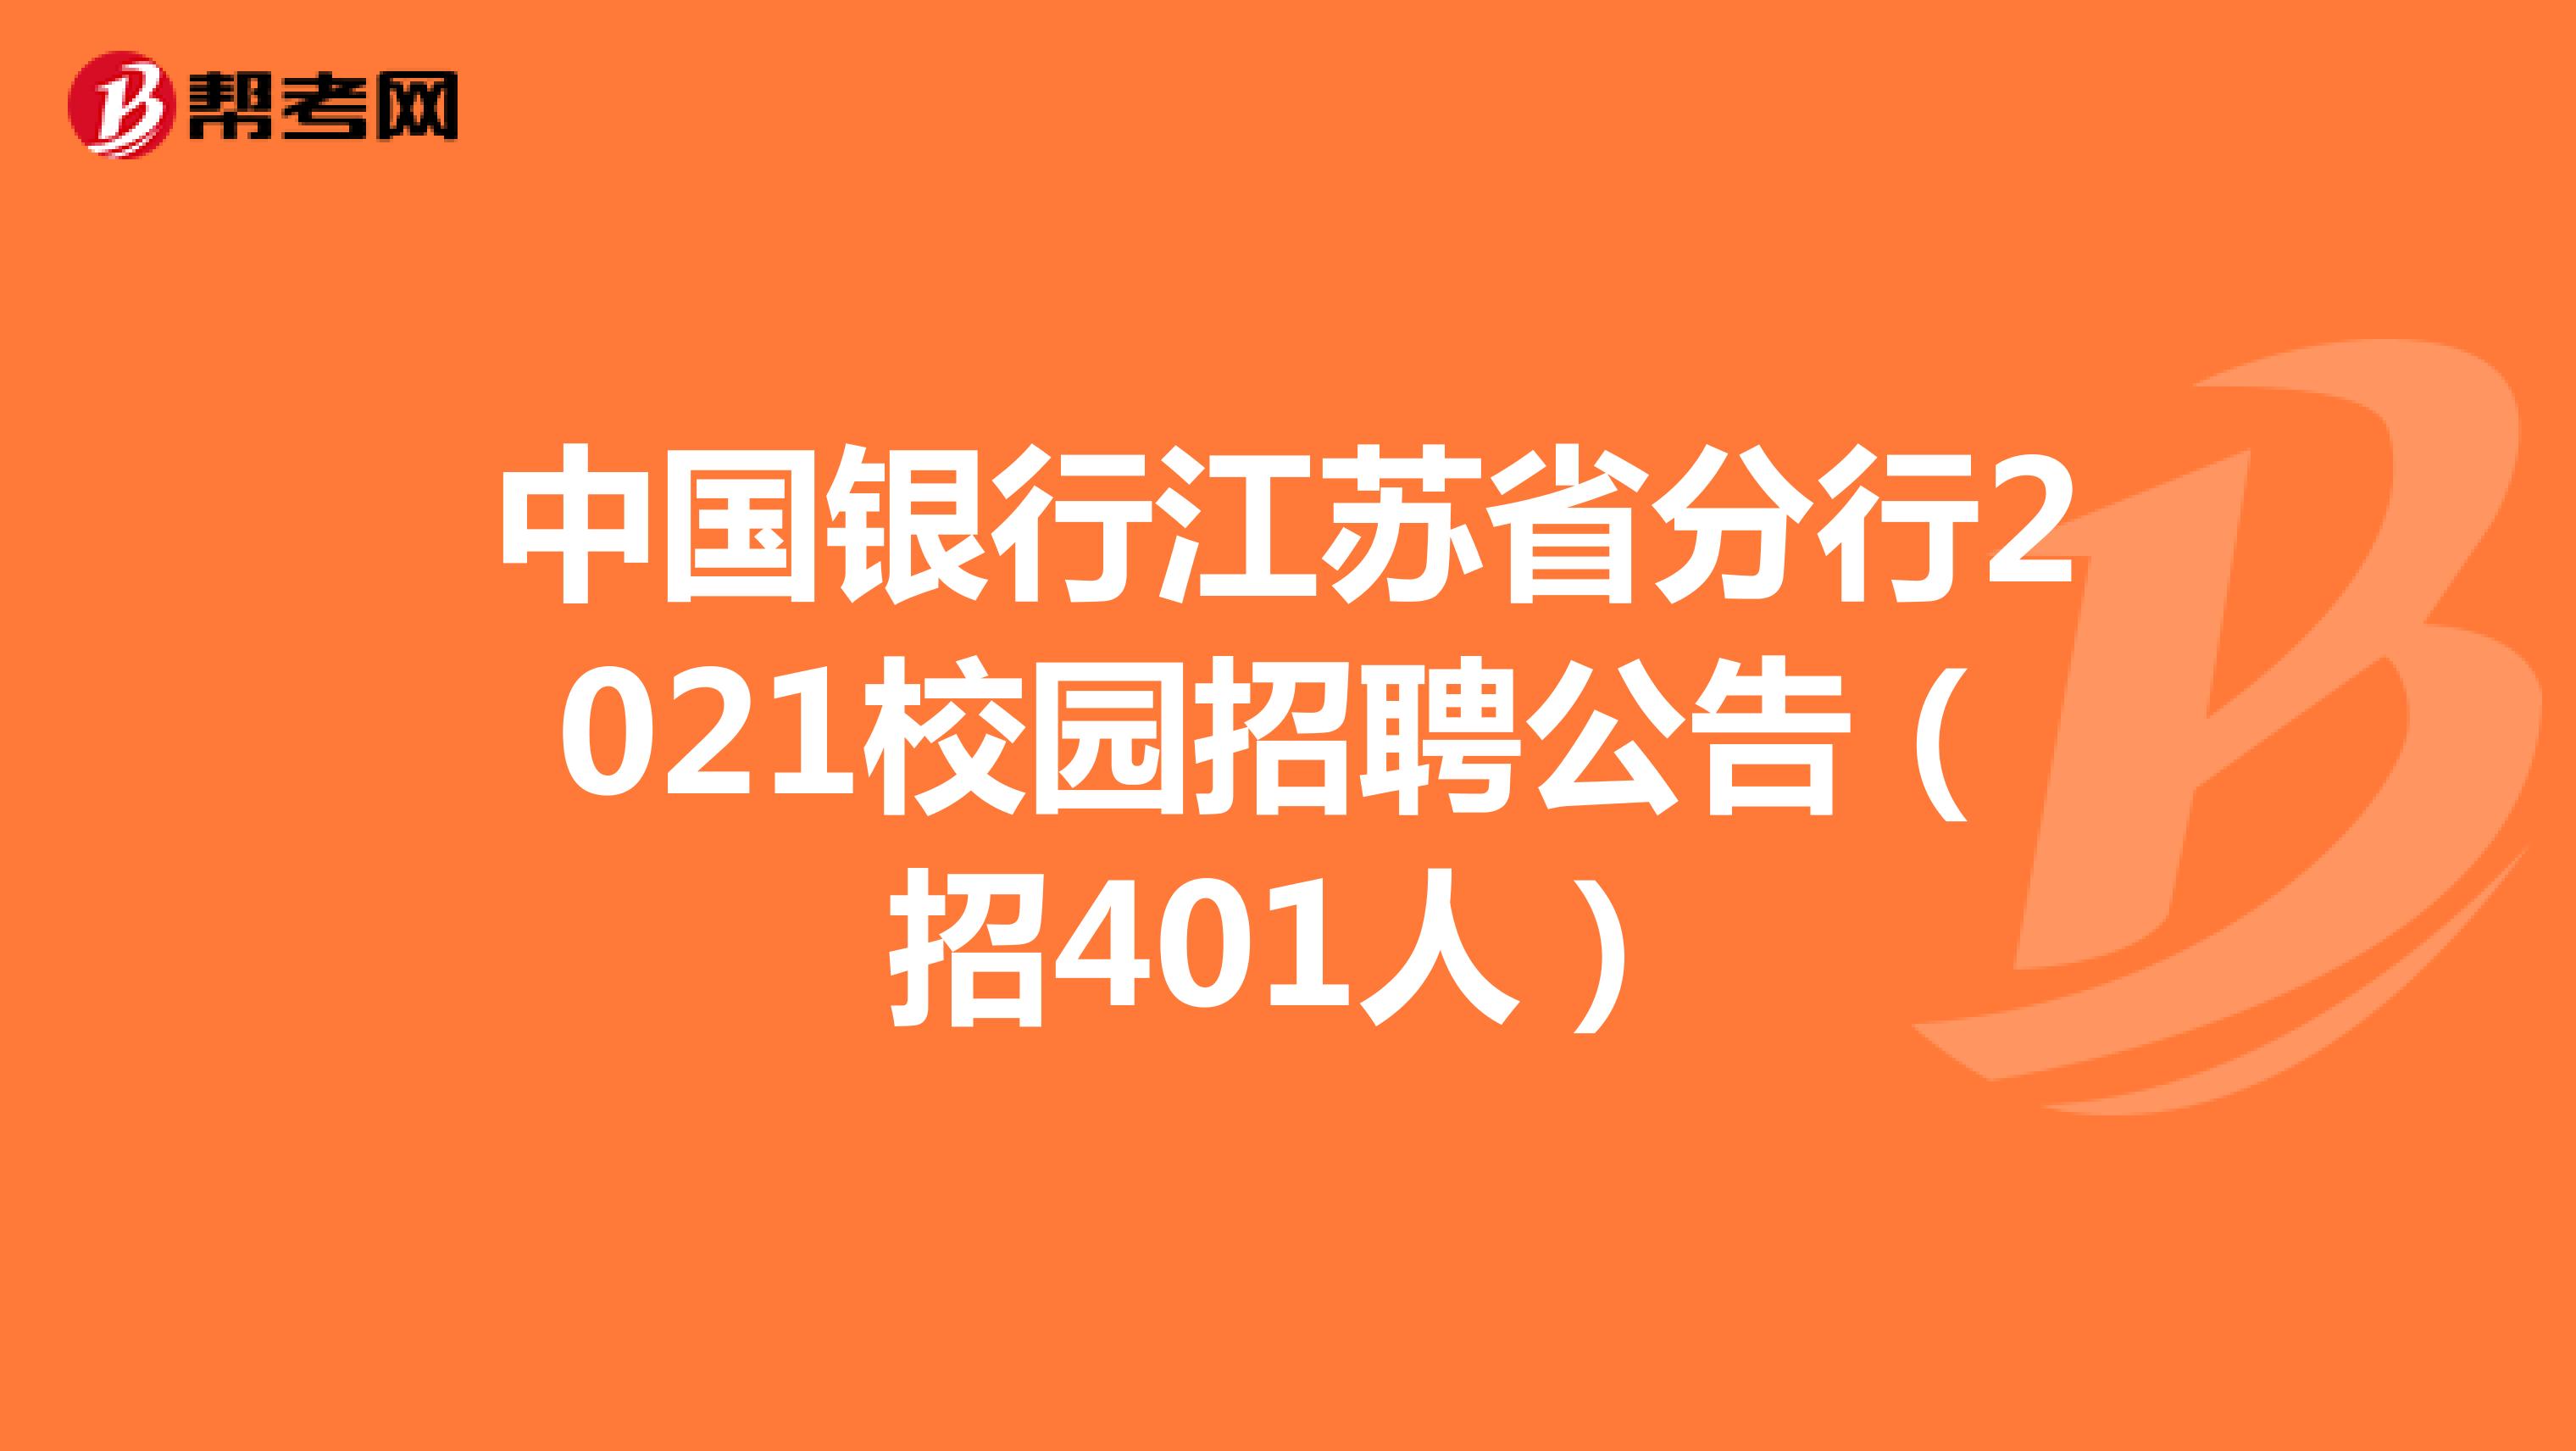 中国银行江苏省分行2021校园招聘公告（招401人）